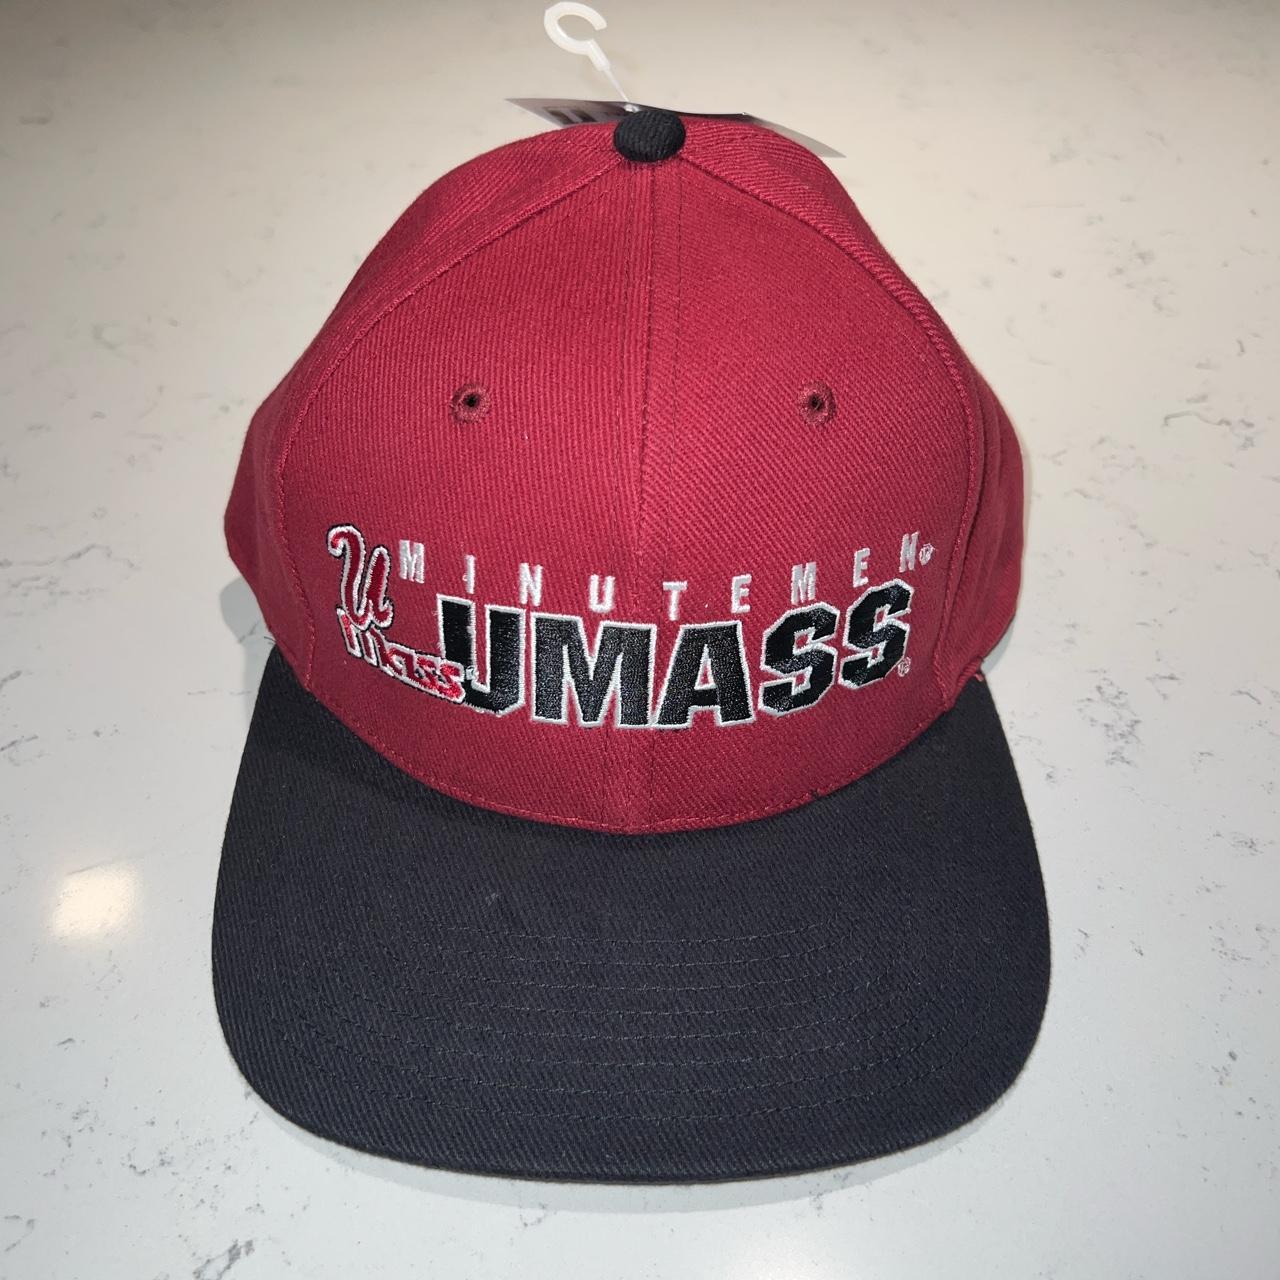 UMass Minutemen Burgundy & Black Twins Enterprise Vintage Strapback Adjustable Cap/Hat